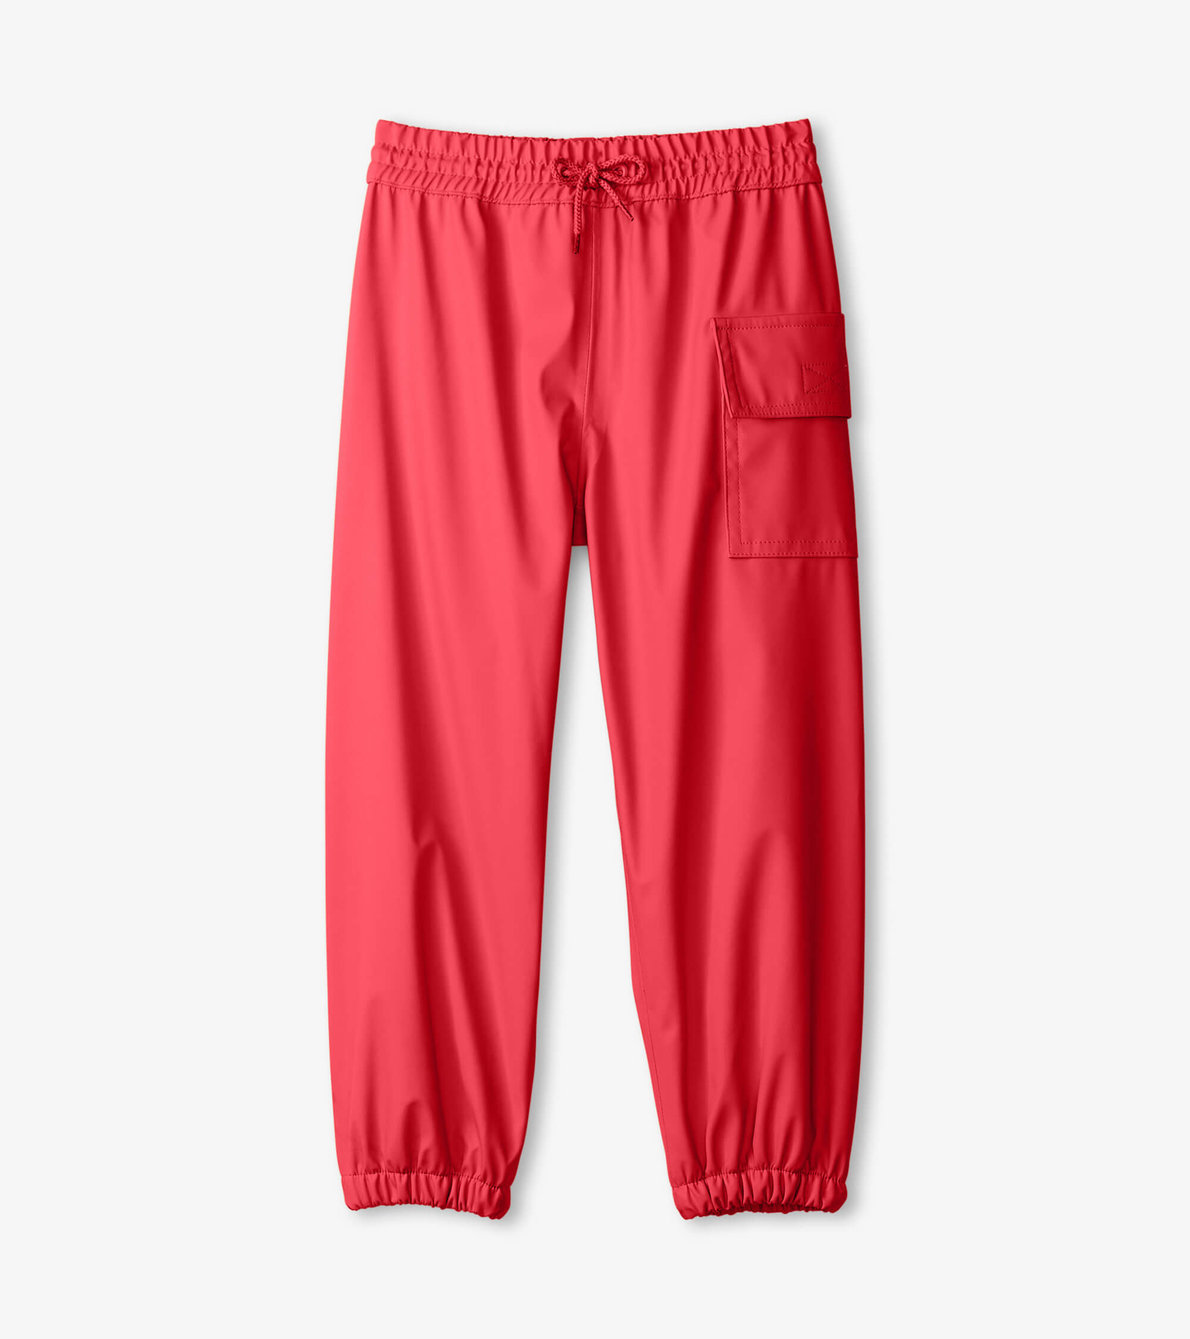 View larger image of Red Splash Pants